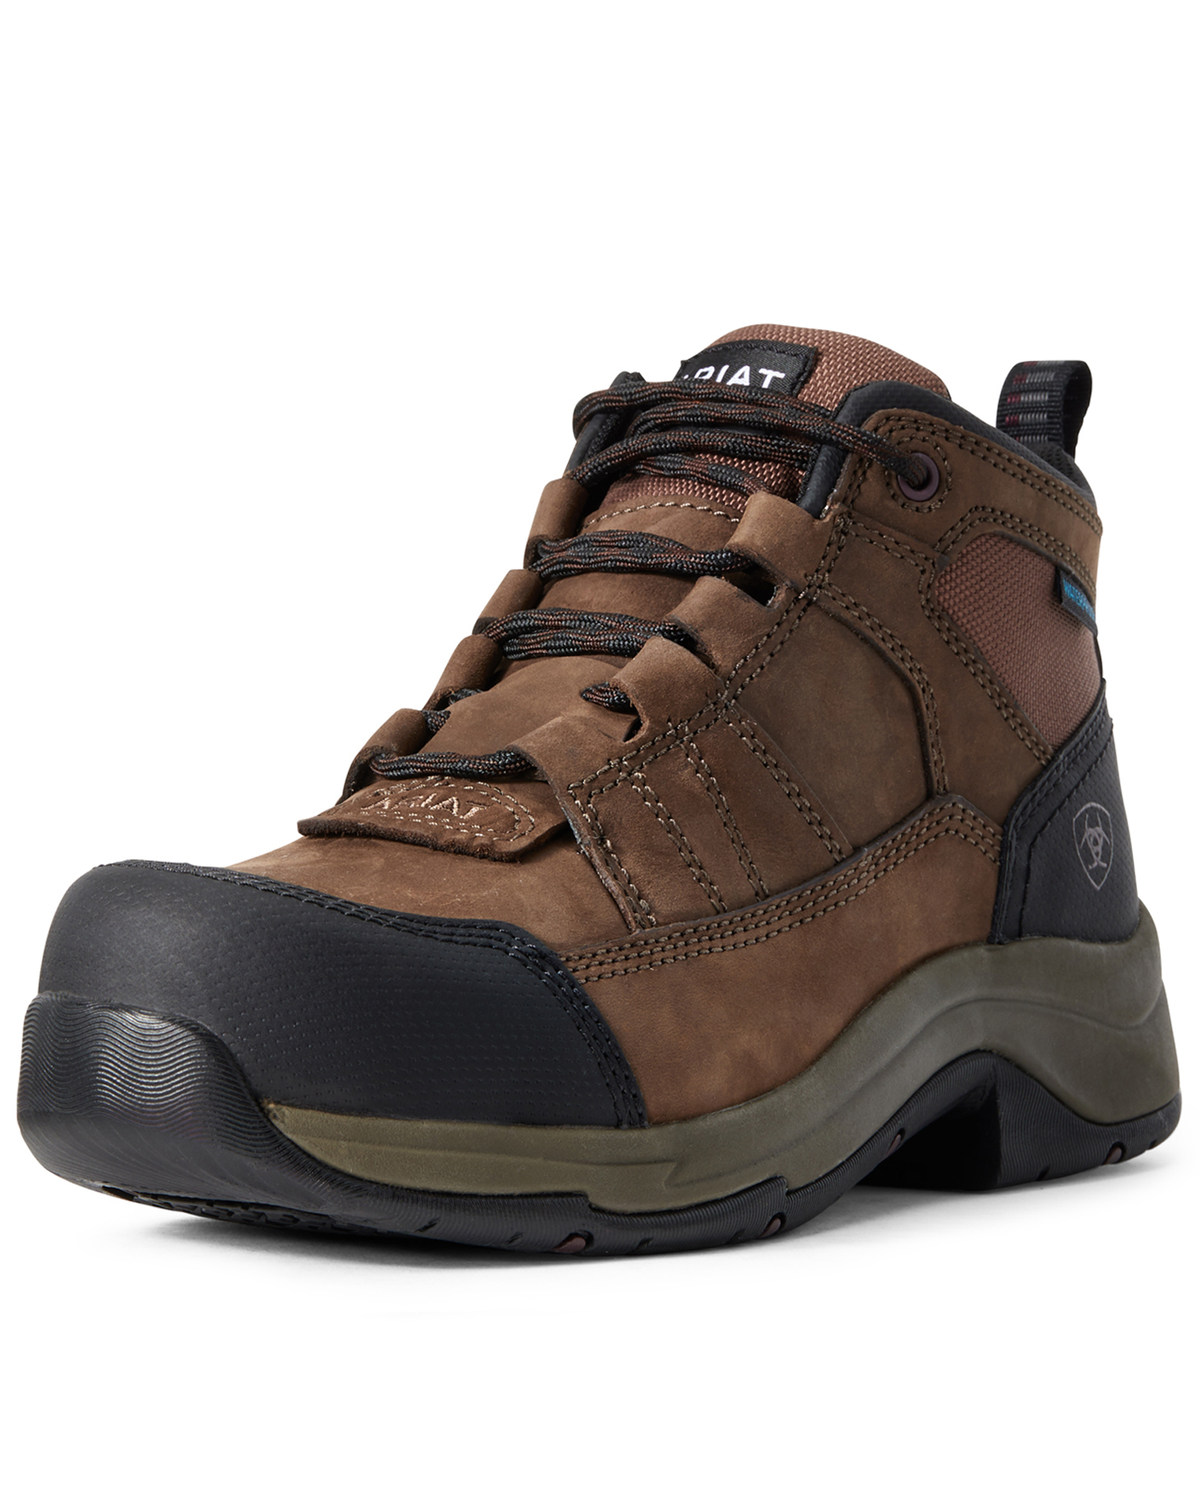 Ariat Women's Telluride Waterproof Work Boots - Composite Toe